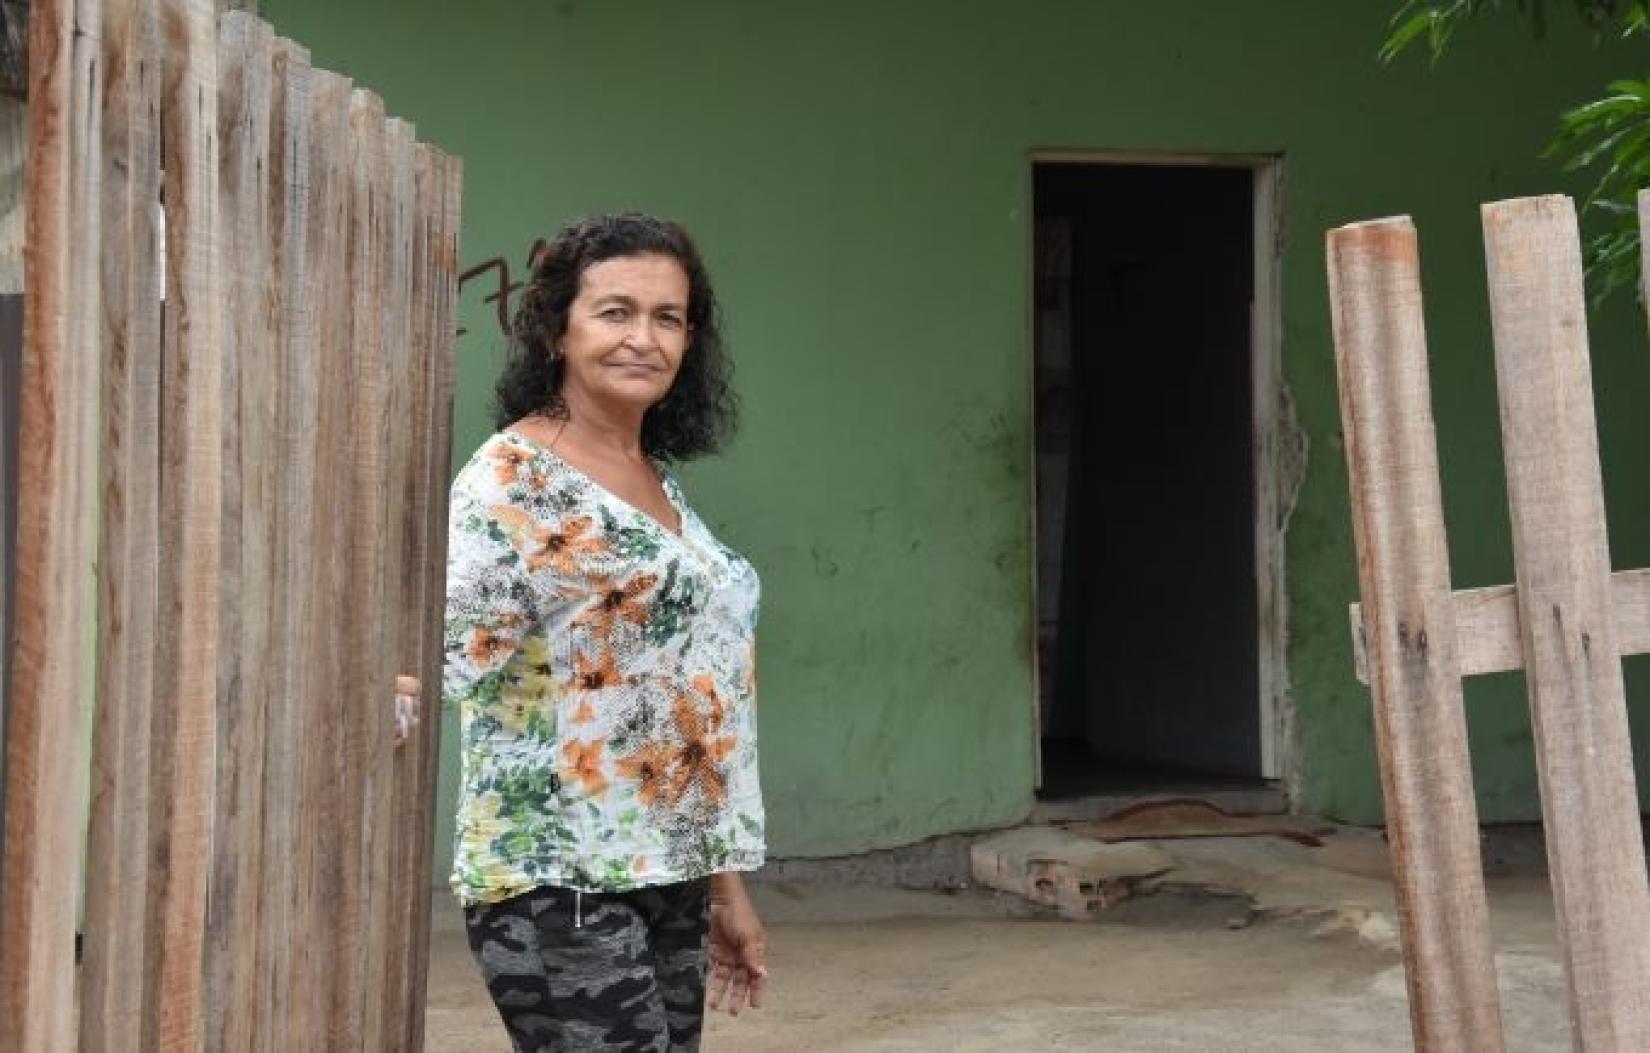 Casa alugada por idosa venezuelana em Boa Vista (RR) tem portas abertas para pessoas em vulnerabilidade. Foto: UNFPA